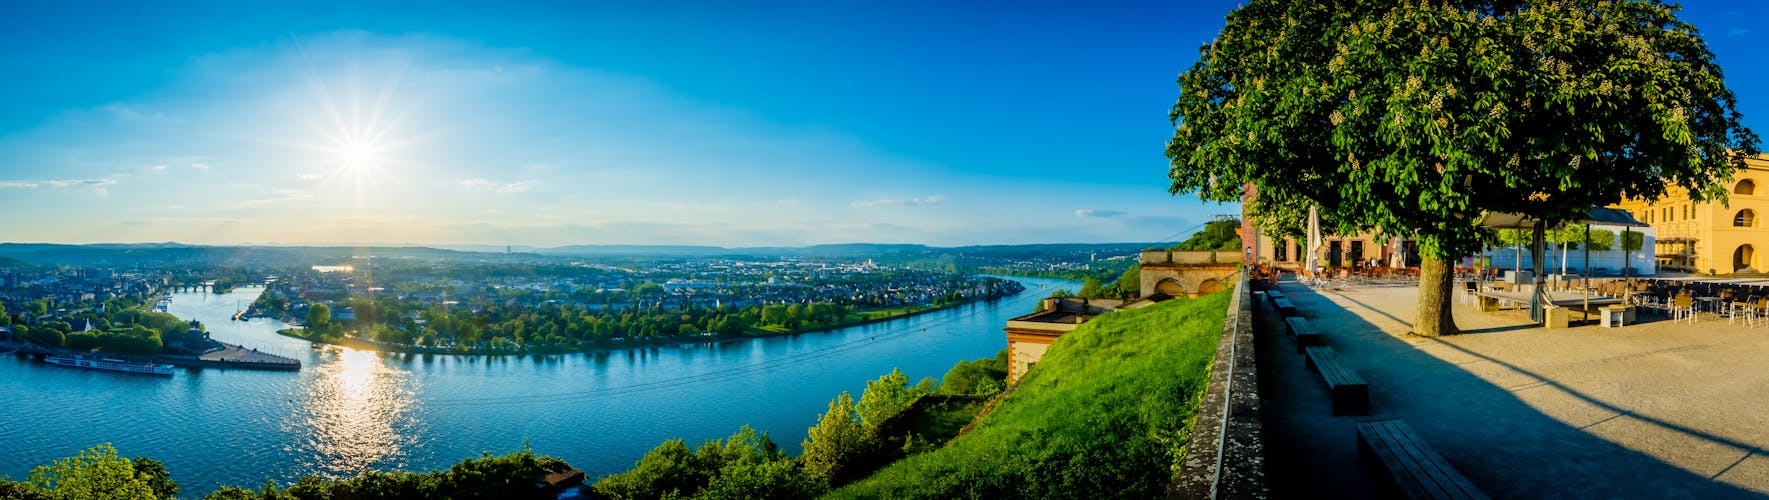 Koblenz_Deutsches Eck_AdobeStock_203250764 © CPN